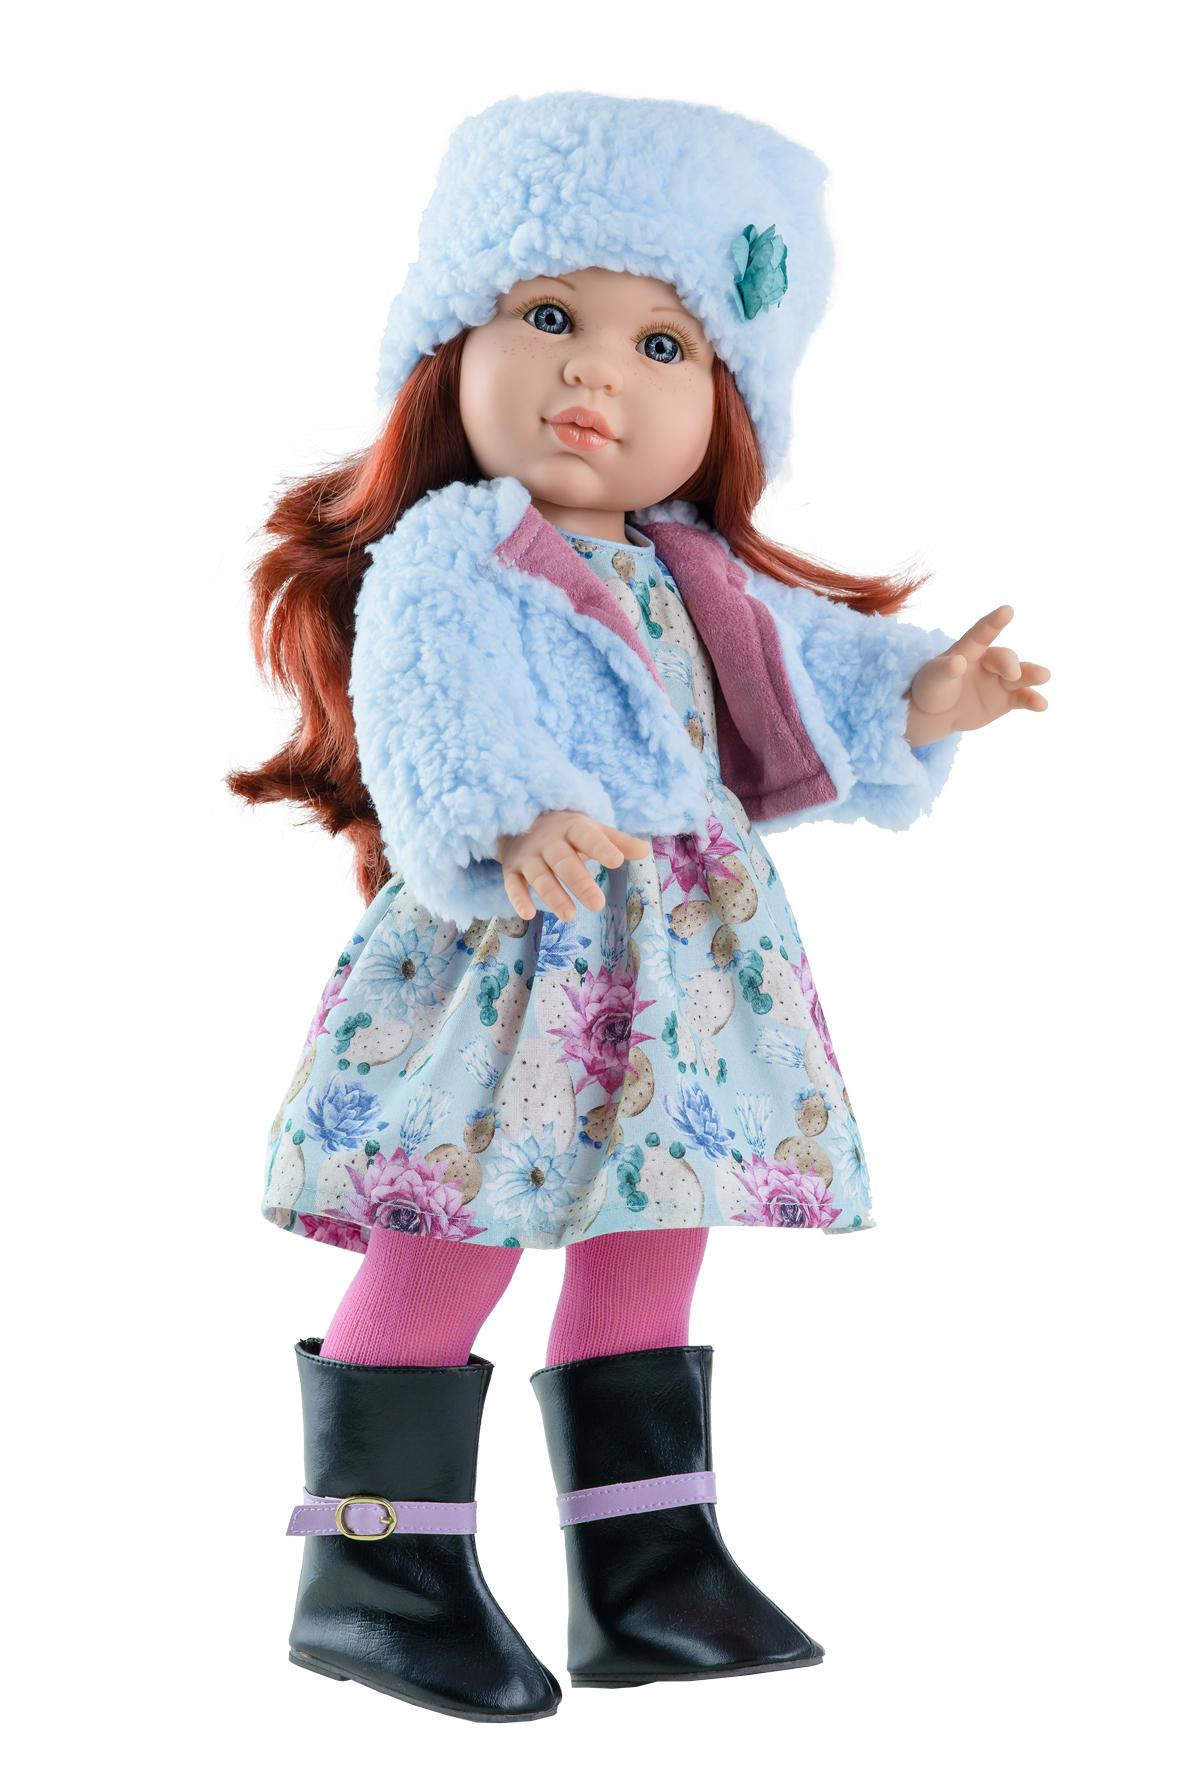 Realistická panenka Becky v modrém huňatém kabátku od f. Paola Reina